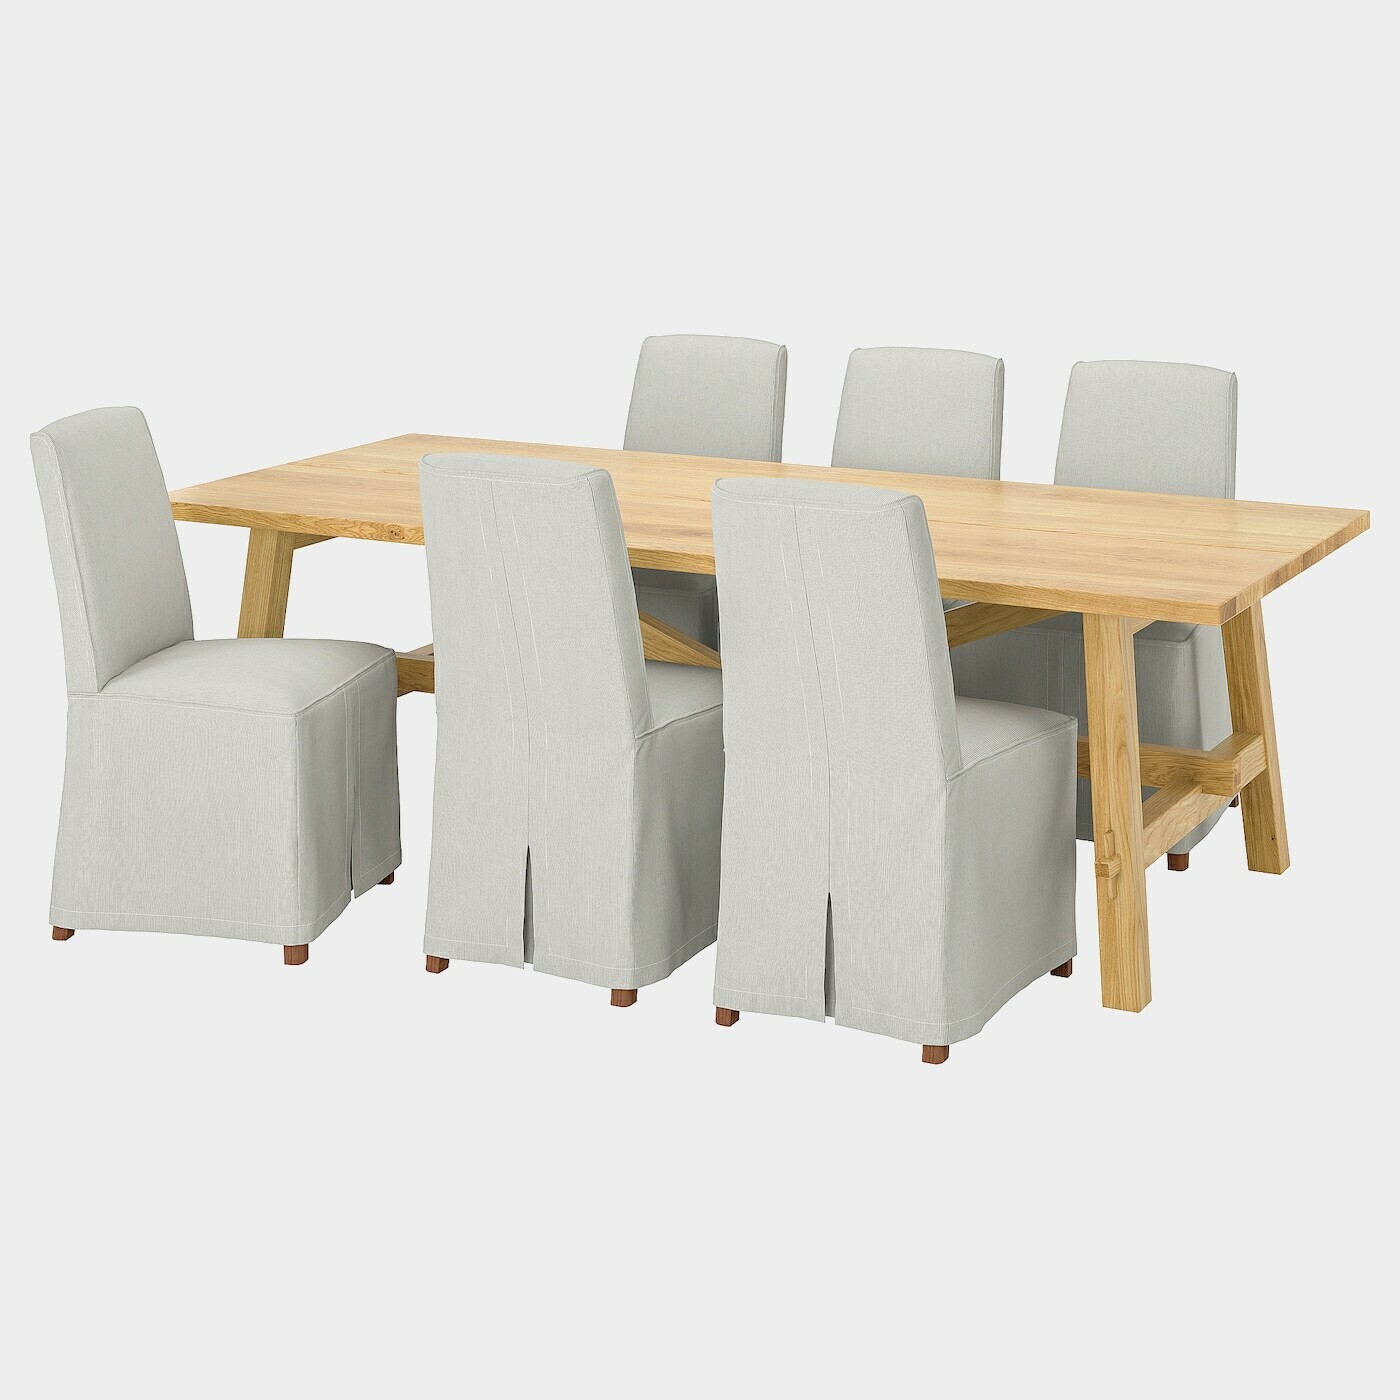 MÖCKELBY / BERGMUND Tisch und 6 Stühle  -  - Möbel Ideen für dein Zuhause von Home Trends. Möbel Trends von Social Media Influencer für dein Skandi Zuhause.